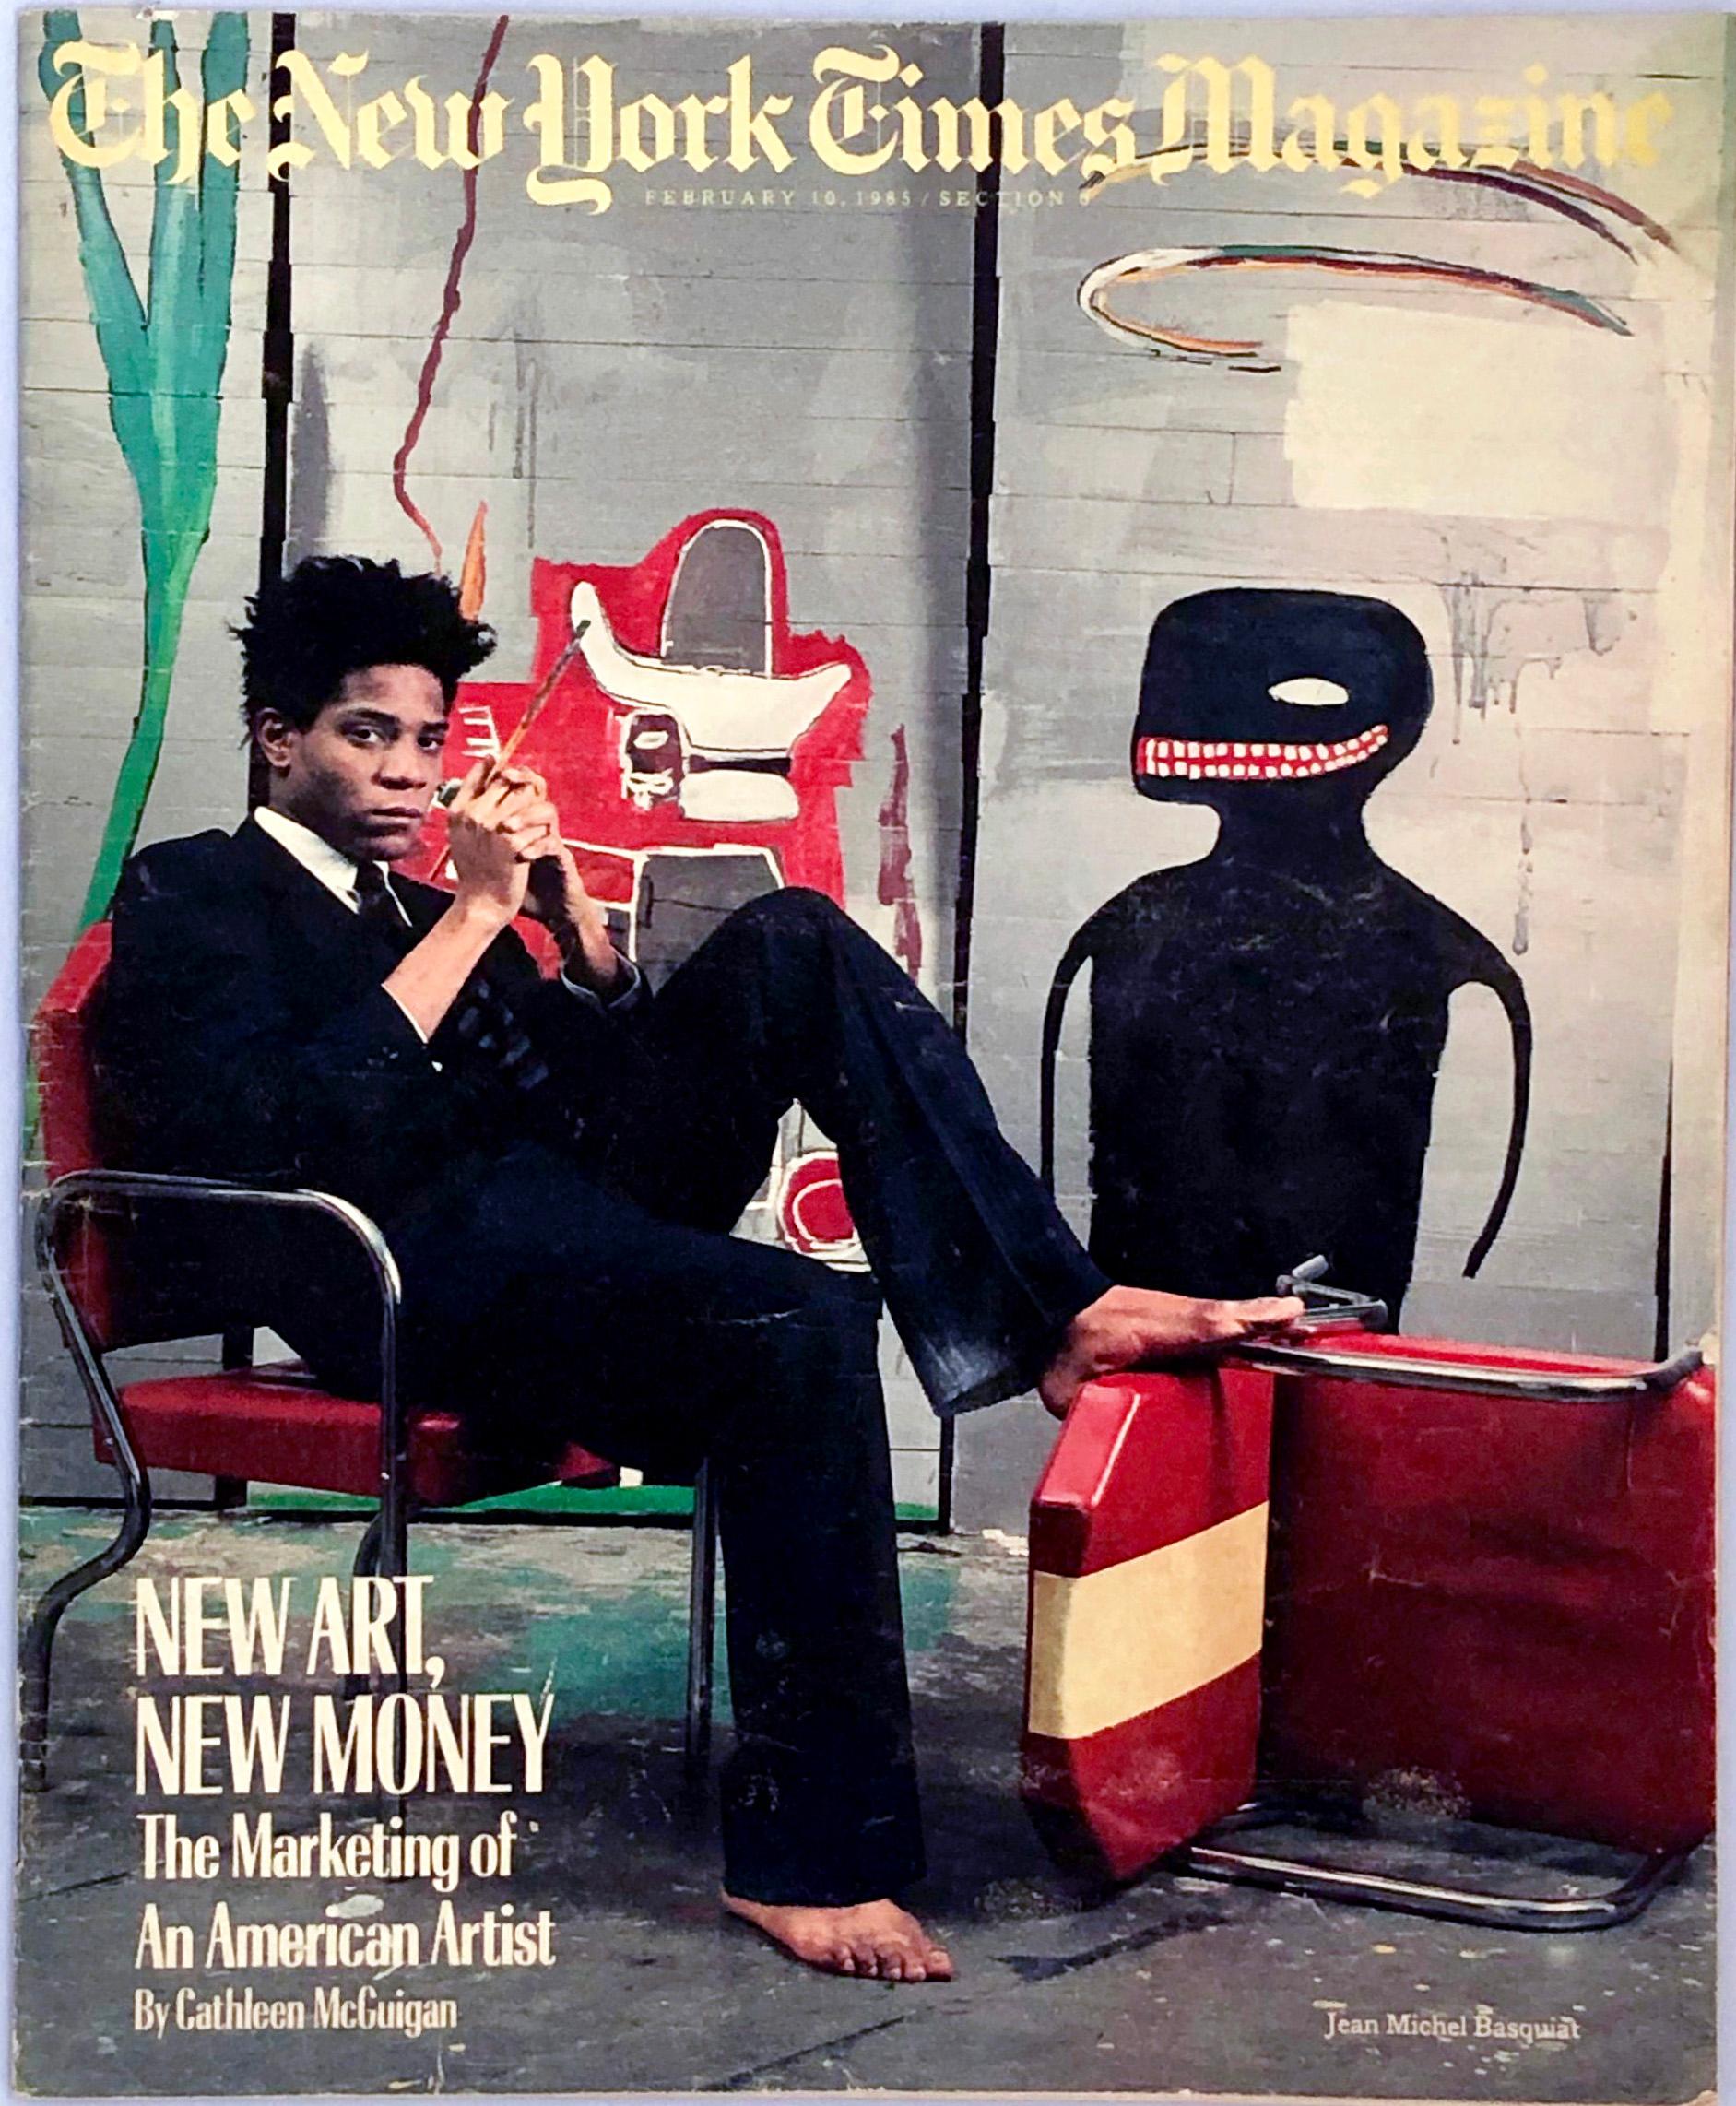 Nous présentons ici le rare magazine iconique Basquiat New York Times Magazine 1985 : 
L'édition du 10 février 1985 du New York Times Magazine est célèbre pour son titre "New Art, New Money : The Marketing of an American Artist". Une pièce de